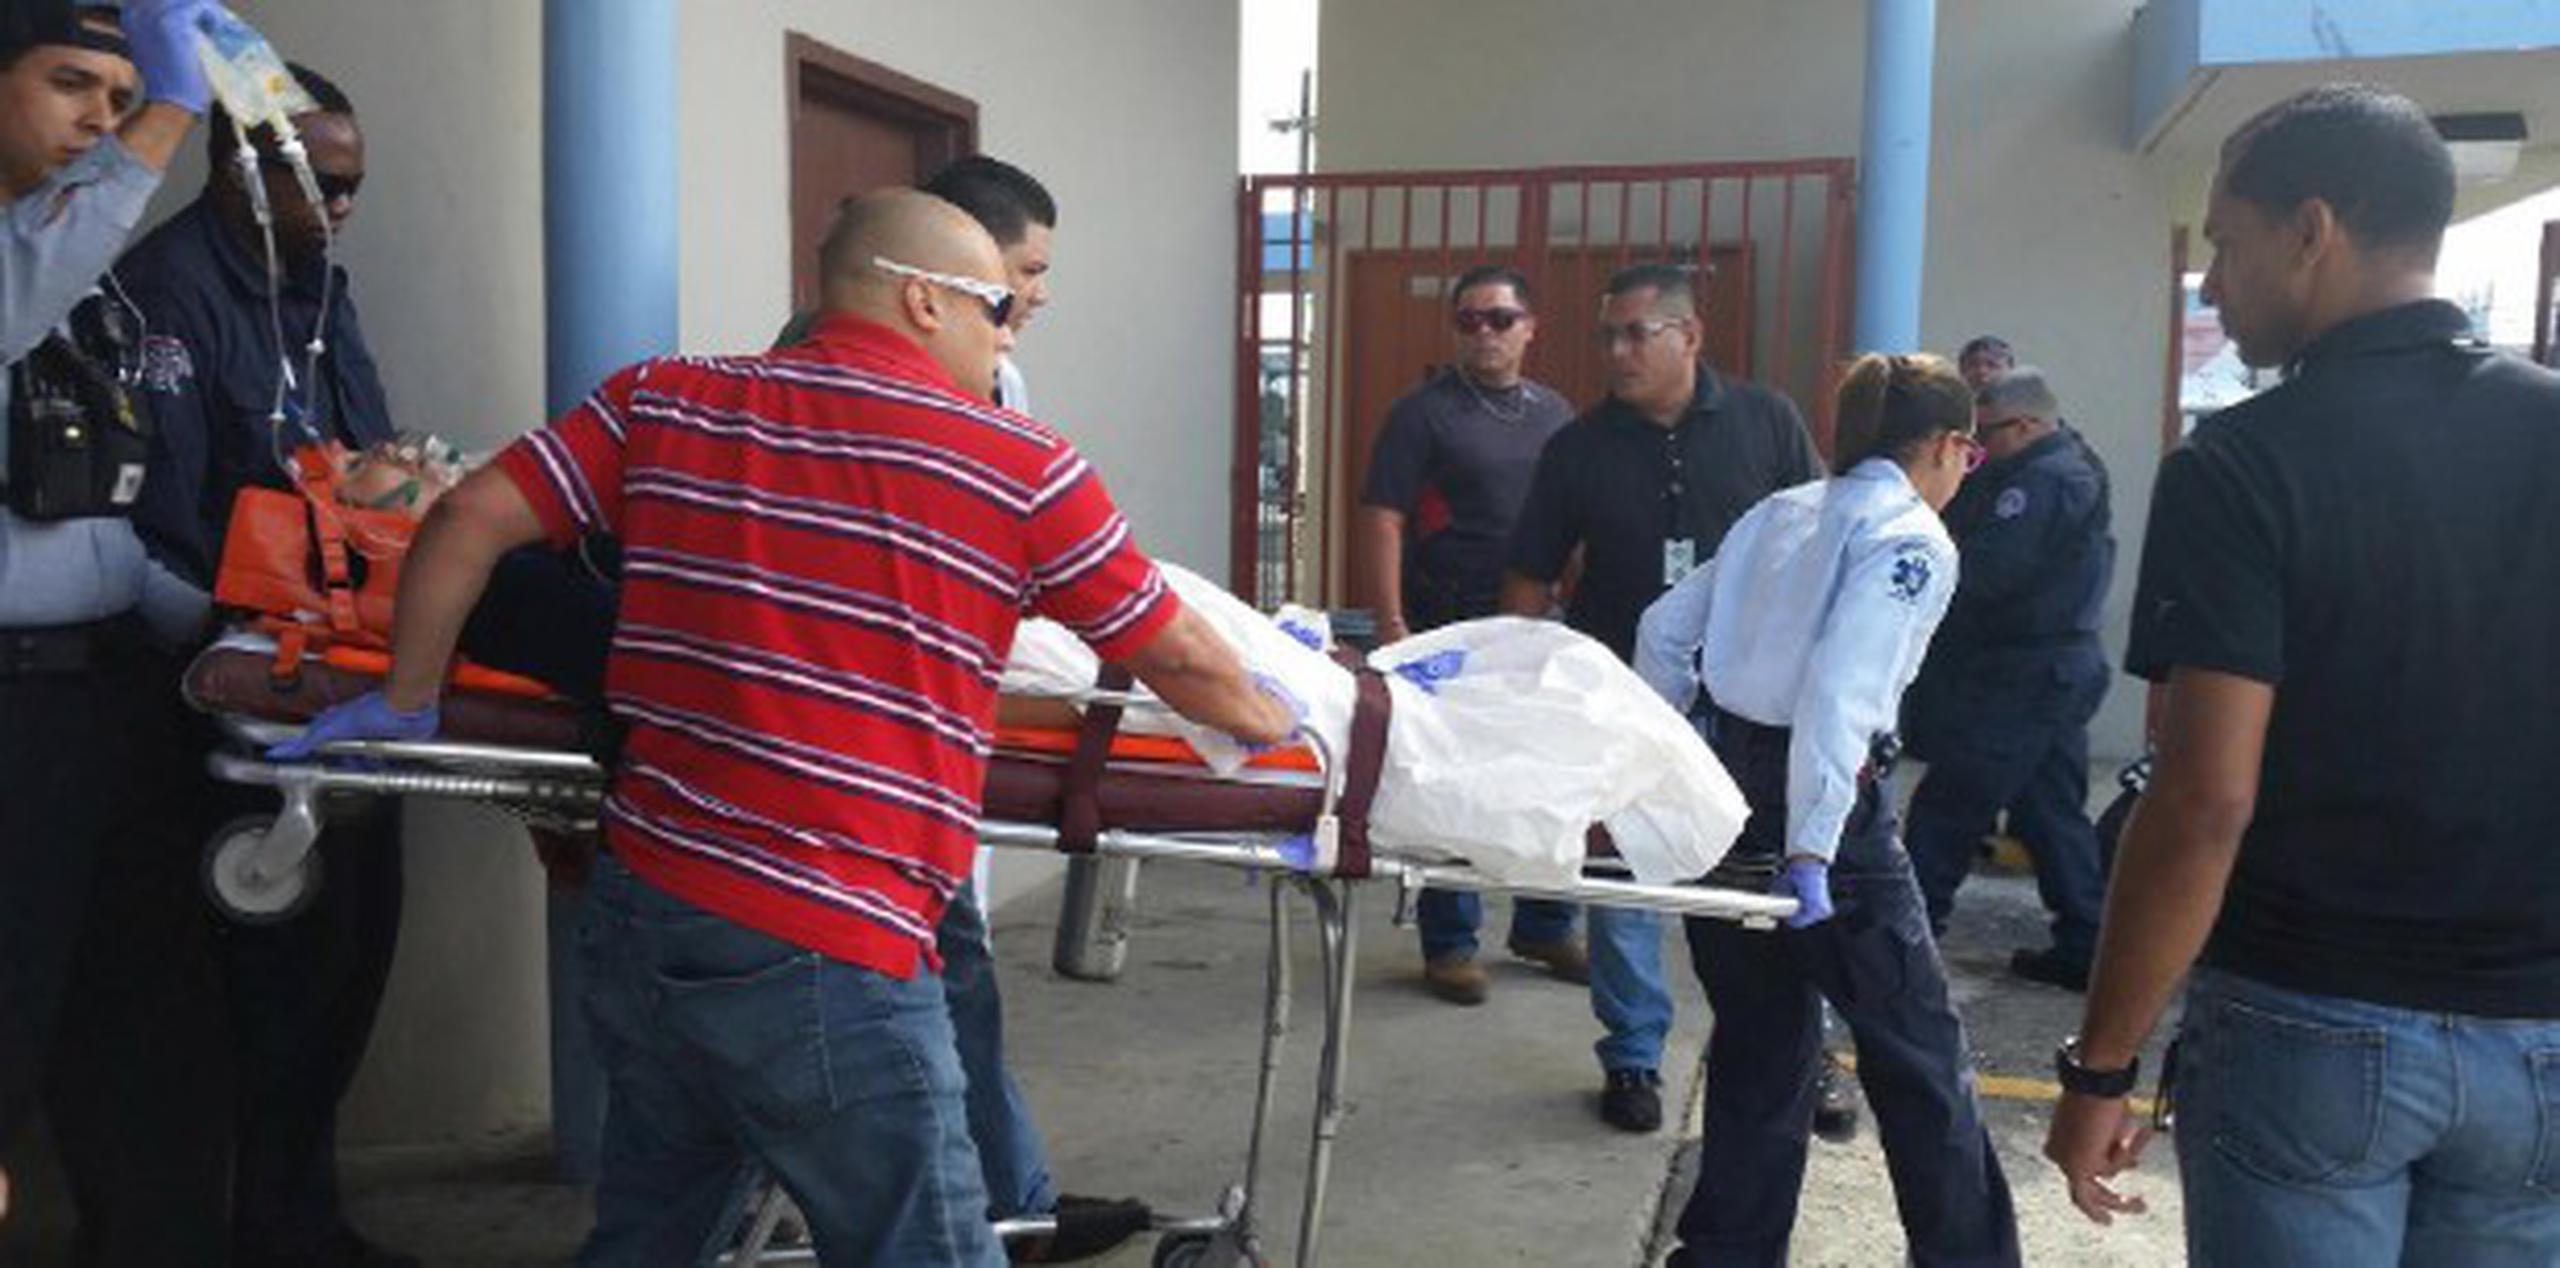 La agente fue transportada de inmediato al Centro de Diagnóstico y Tratamiento de Puerto Nuevo, José A. López Antongiorgi, donde le prestaron los primeros auxilios. (Suministrada)